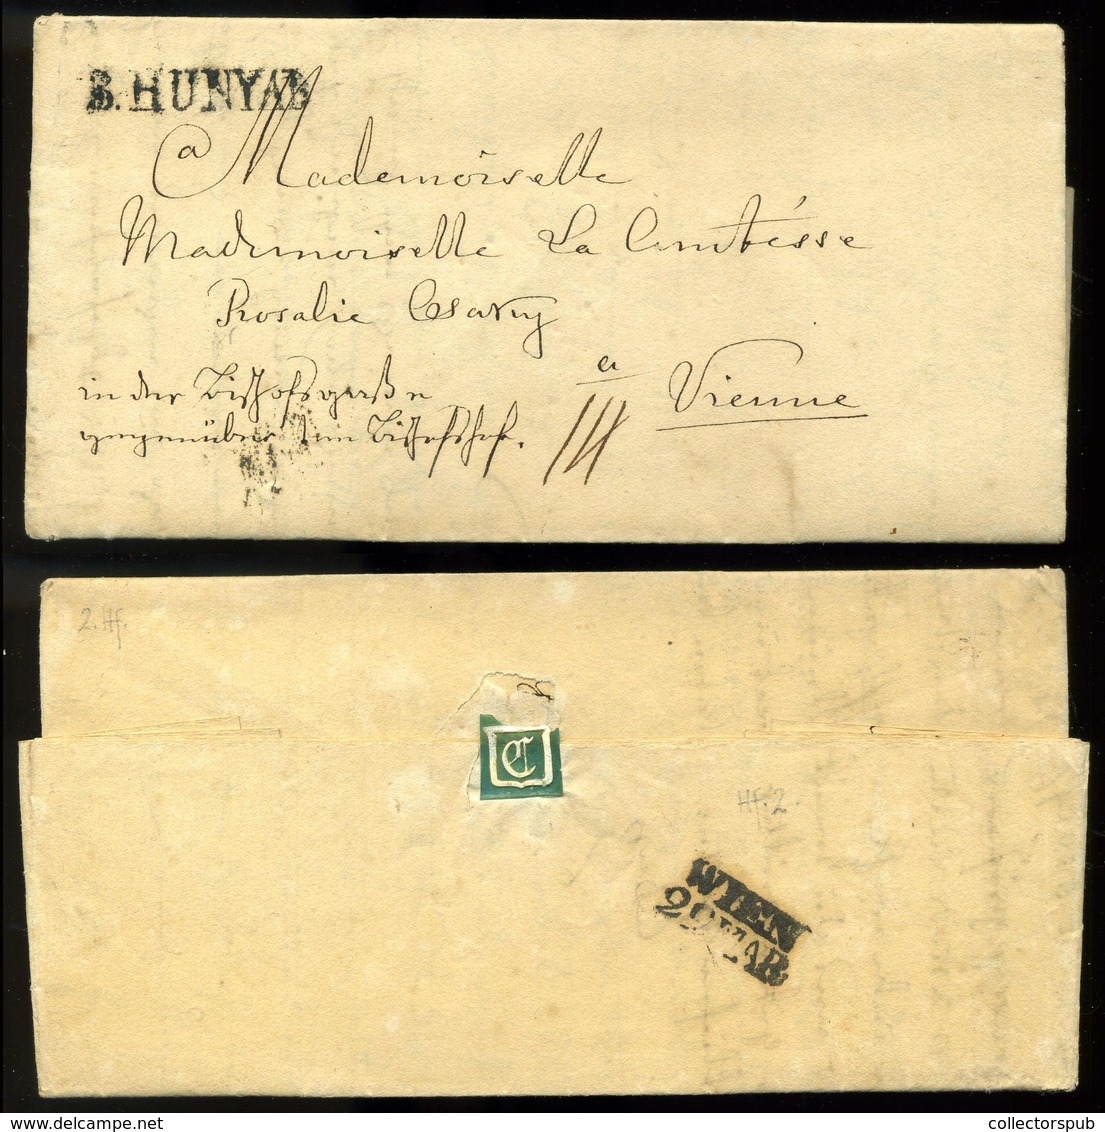 BÁNFFYHUNYAD 1837. Szép Portós Levél , Bécsbe Küldve Csáky Rozália Grófnőnek.  /  Unpaid Letter Romania - ...-1867 Vorphilatelie